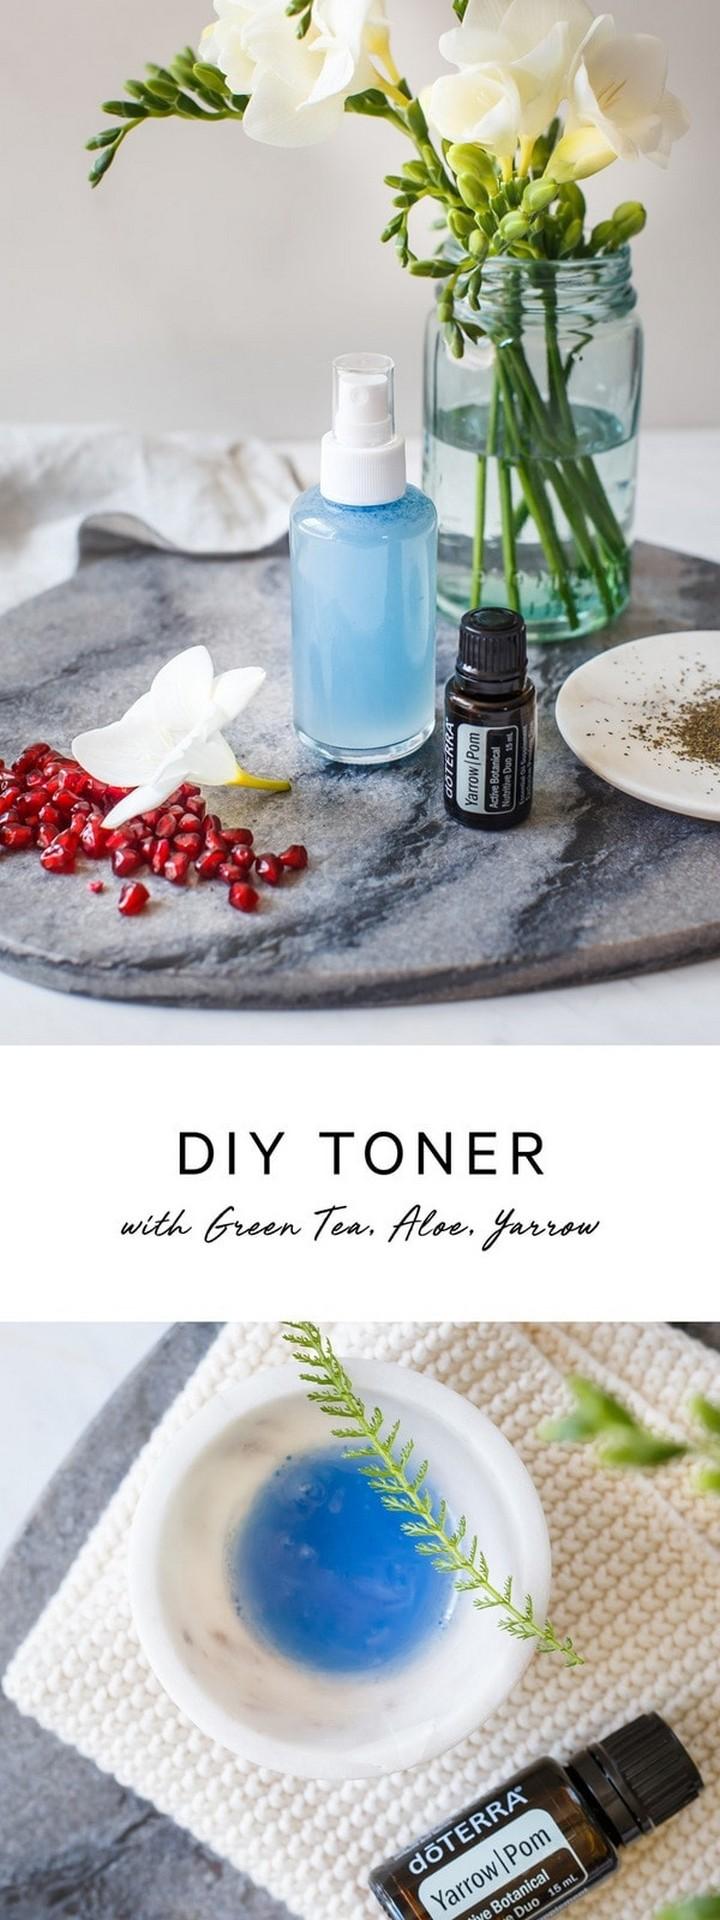 DIY Toner with Green Tea Aloe and Yarrow